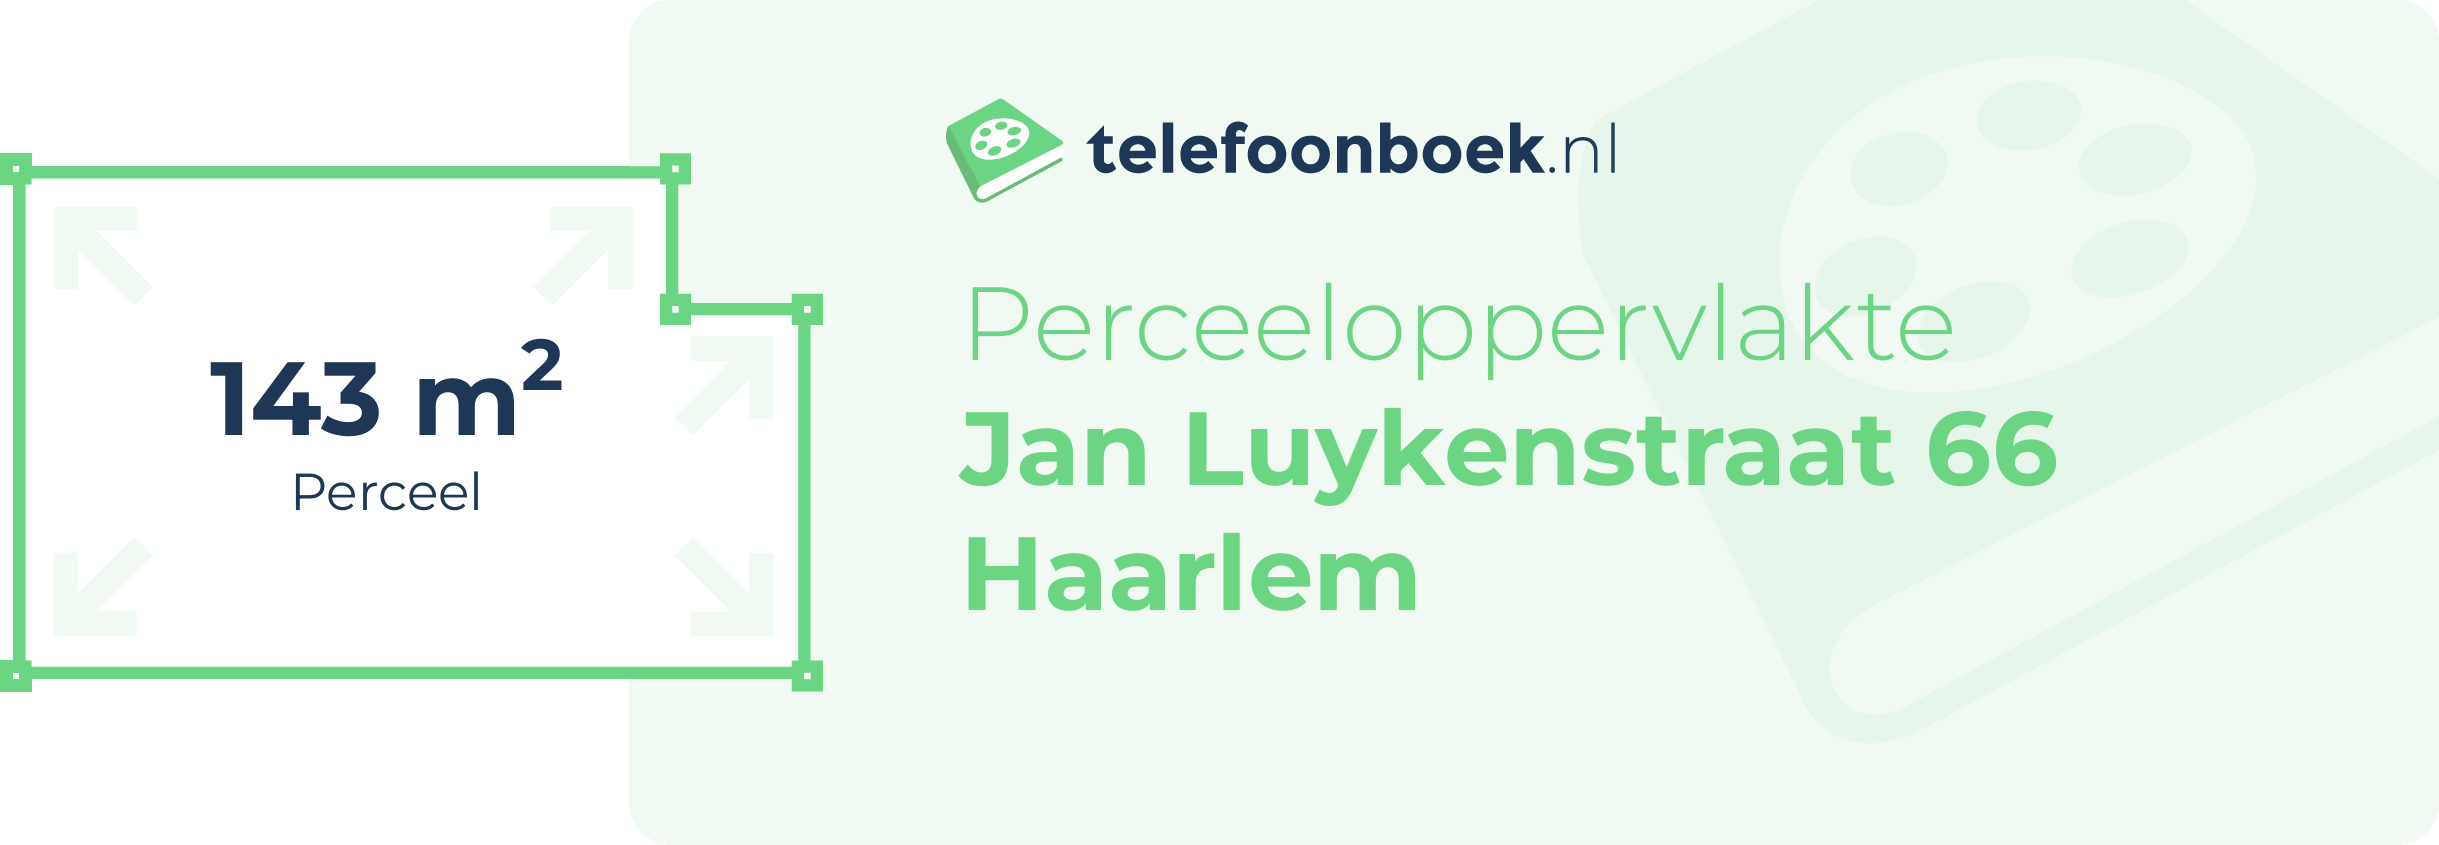 Perceeloppervlakte Jan Luykenstraat 66 Haarlem